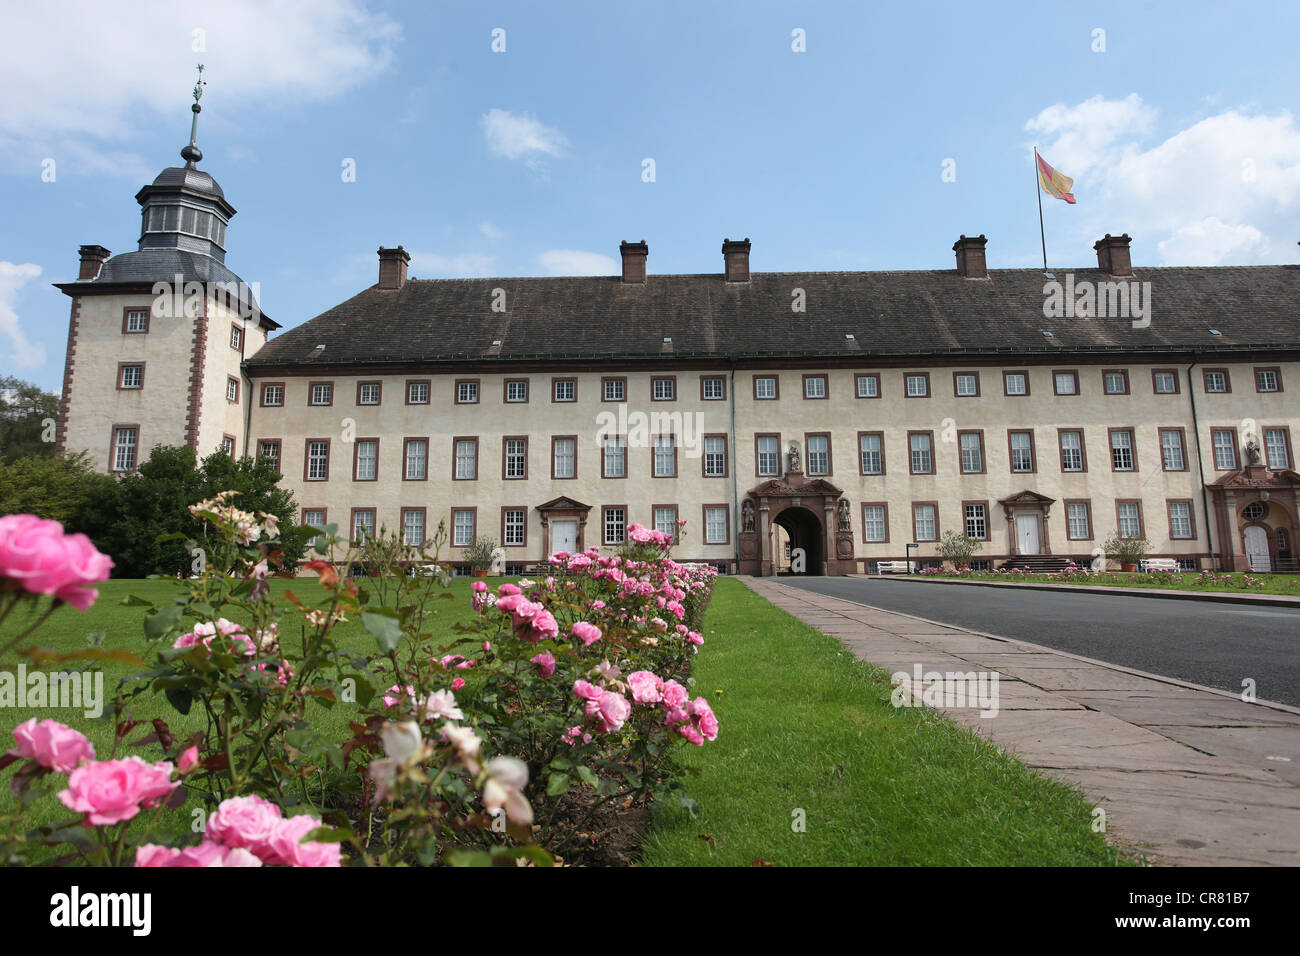 Le château Schloss Corvey, ancienne abbaye, Hoexter, Suède, la région Rhénanie du Nord-Westphalie, Allemagne, Europe Banque D'Images